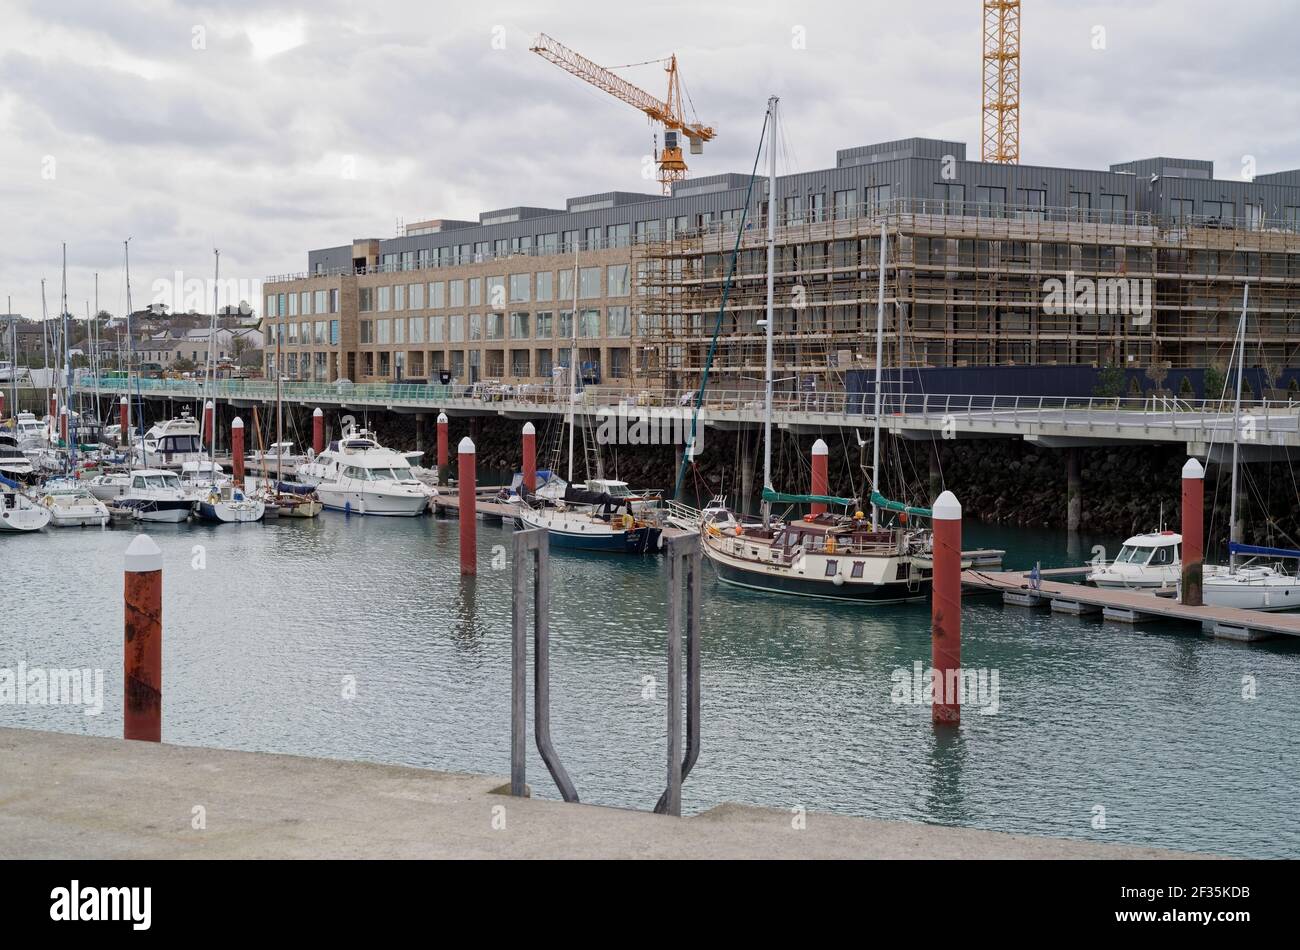 GREYSTONES, IRLANDE - 16 mars 2020 : le port de plaisance avec yachts à Greystones, Irlande. Chantier de construction d'un immeuble résidentiel avec tour Banque D'Images